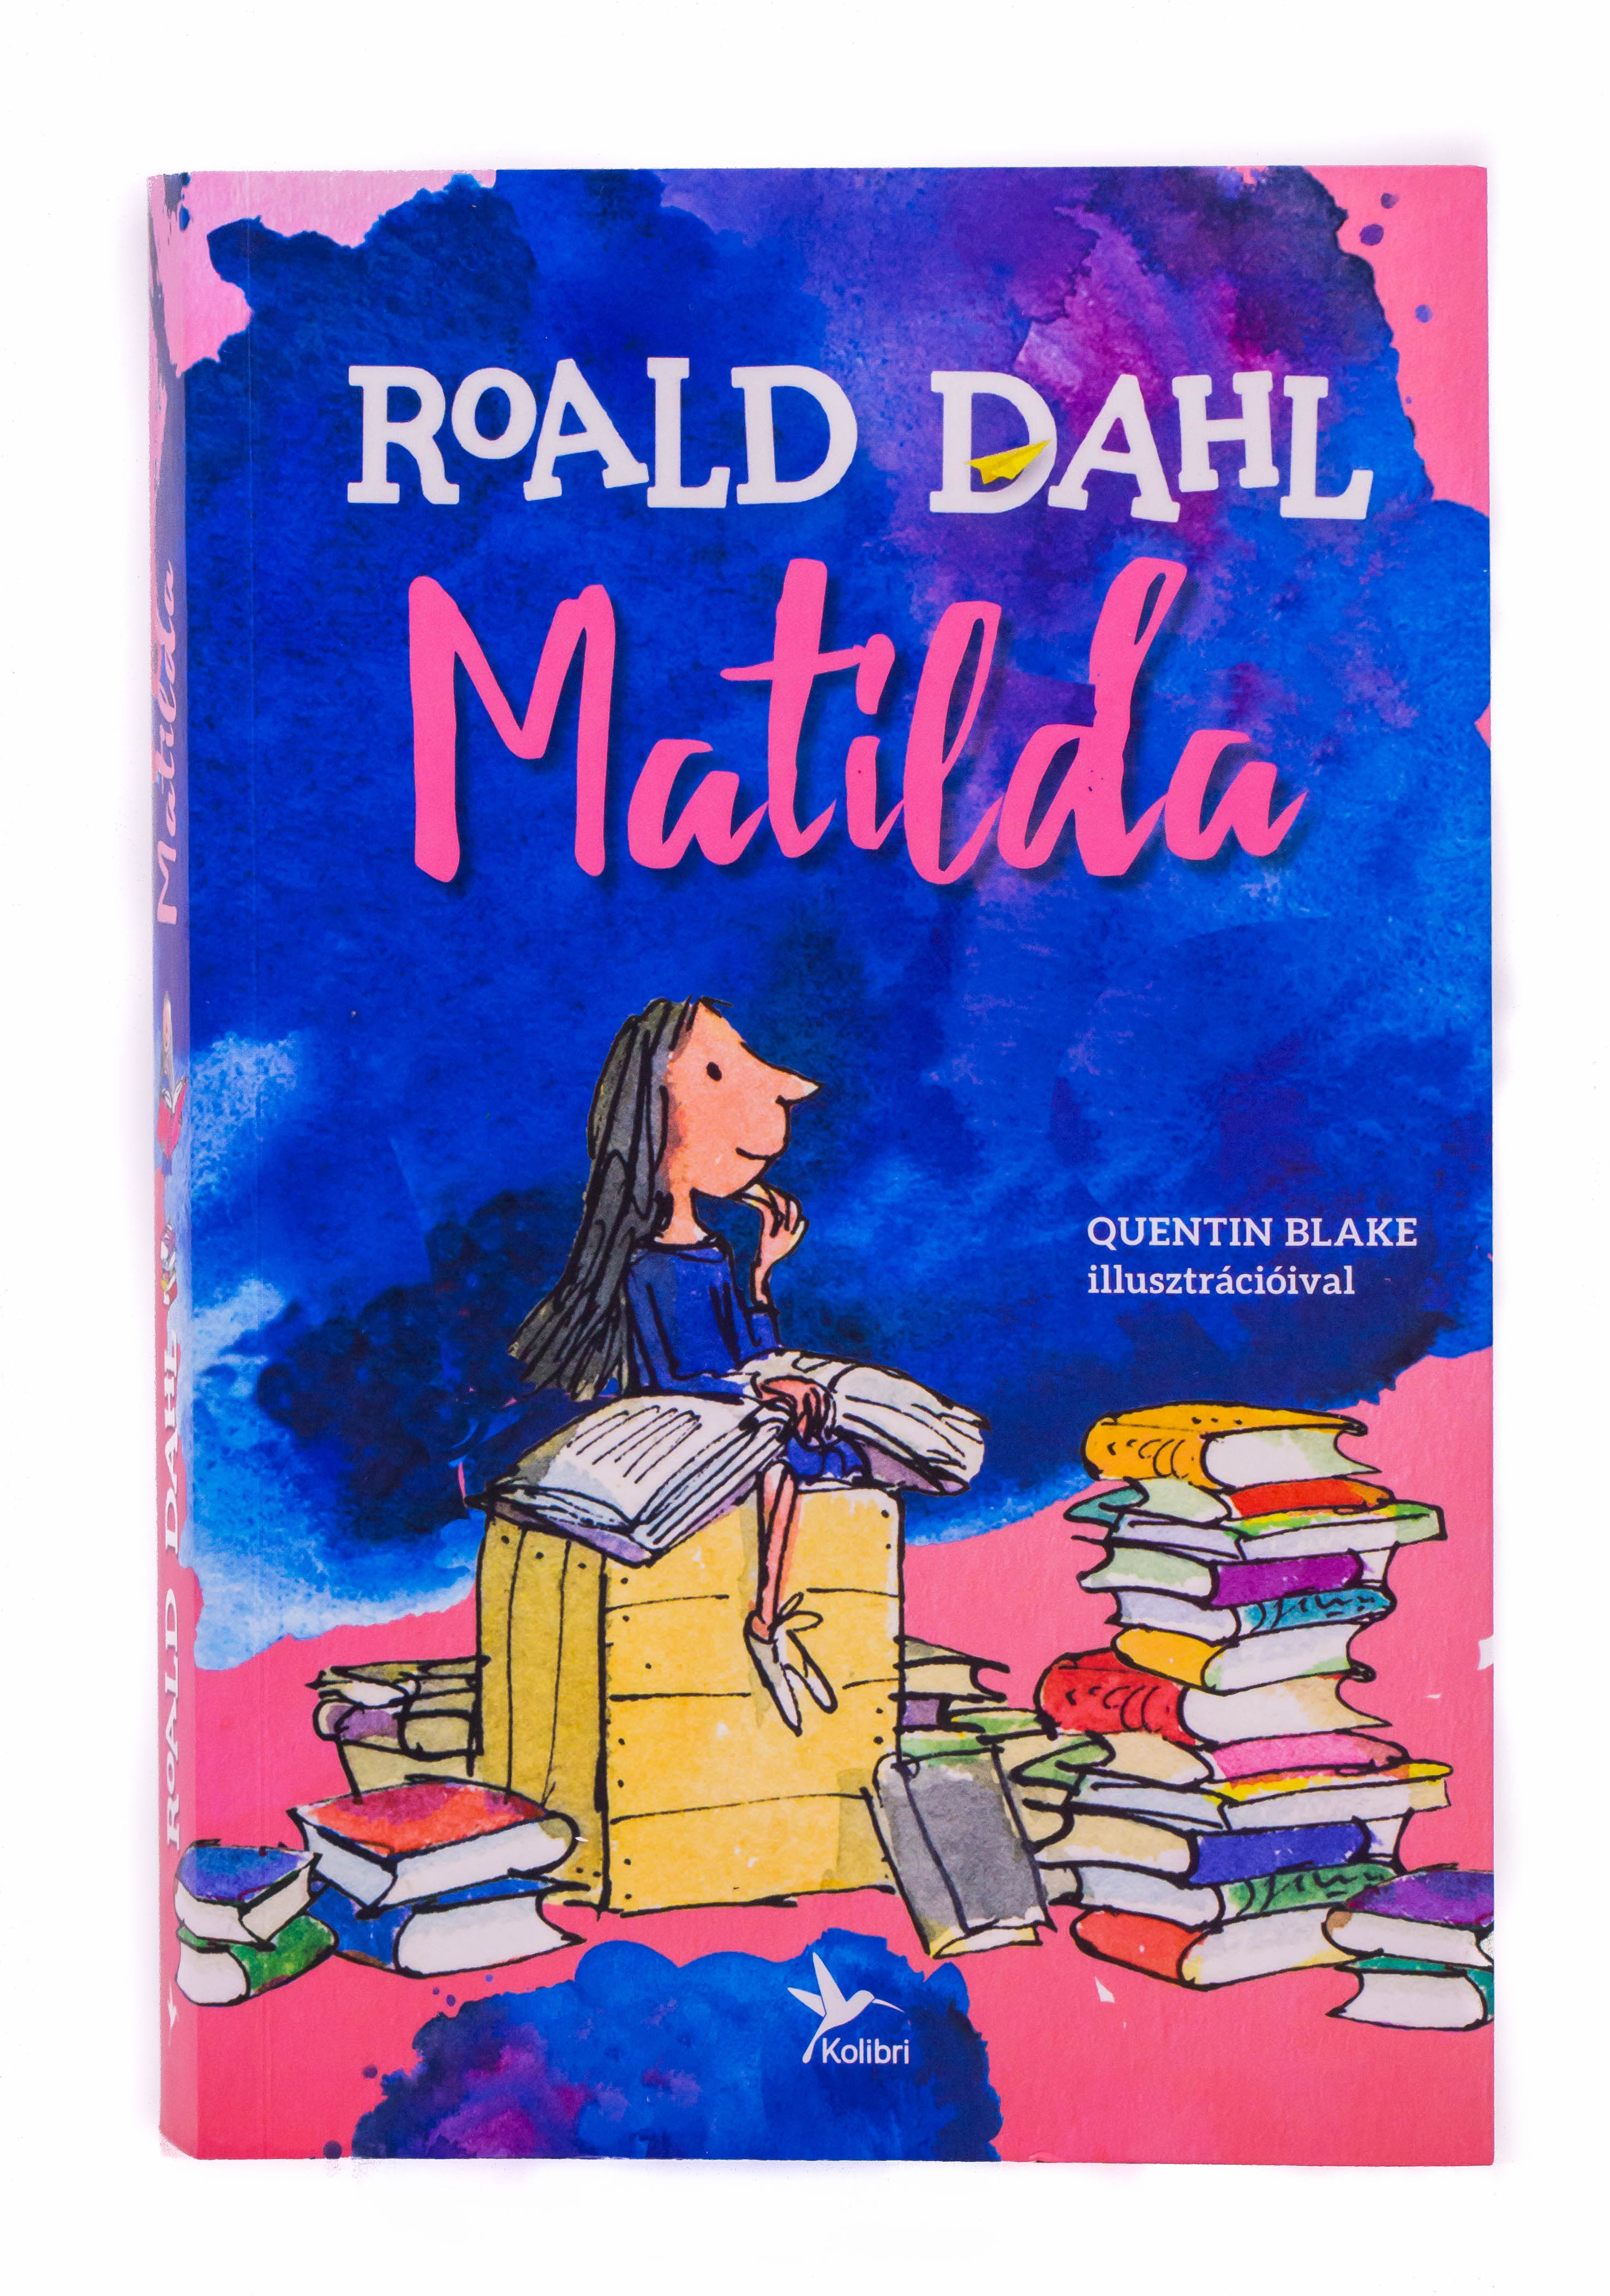 Matilda roald dahl. Роальд даль. Matilda by Roald Dahl читать на английском.